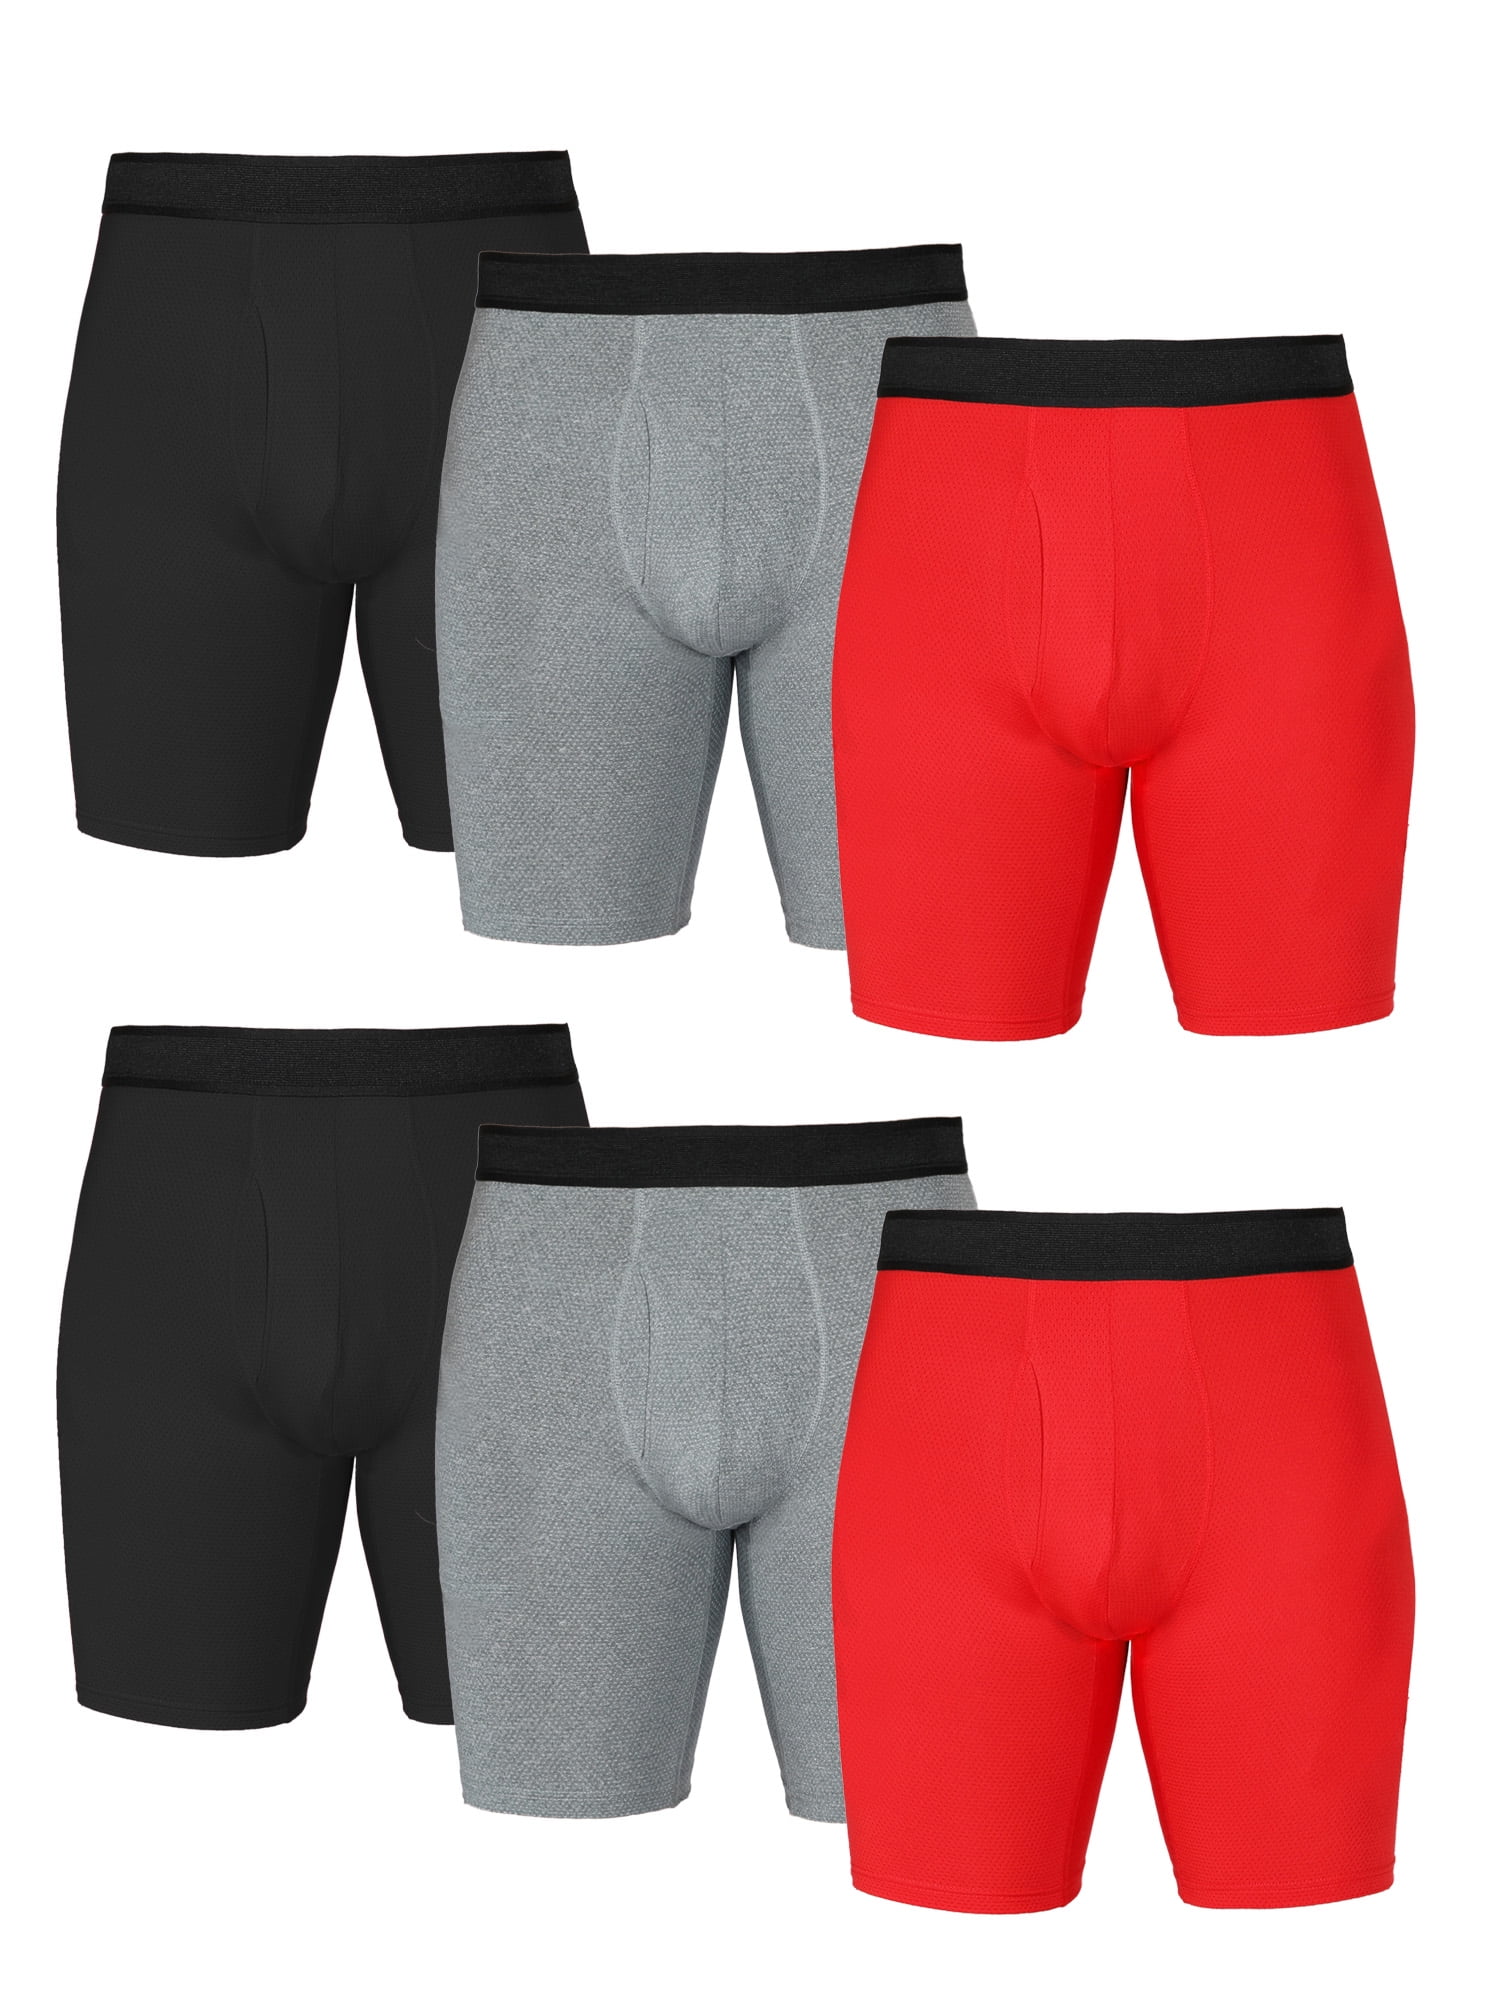 U.S. Polo Assn. Men's Cotton Stretch Briefs Underwear, 3-Pack 